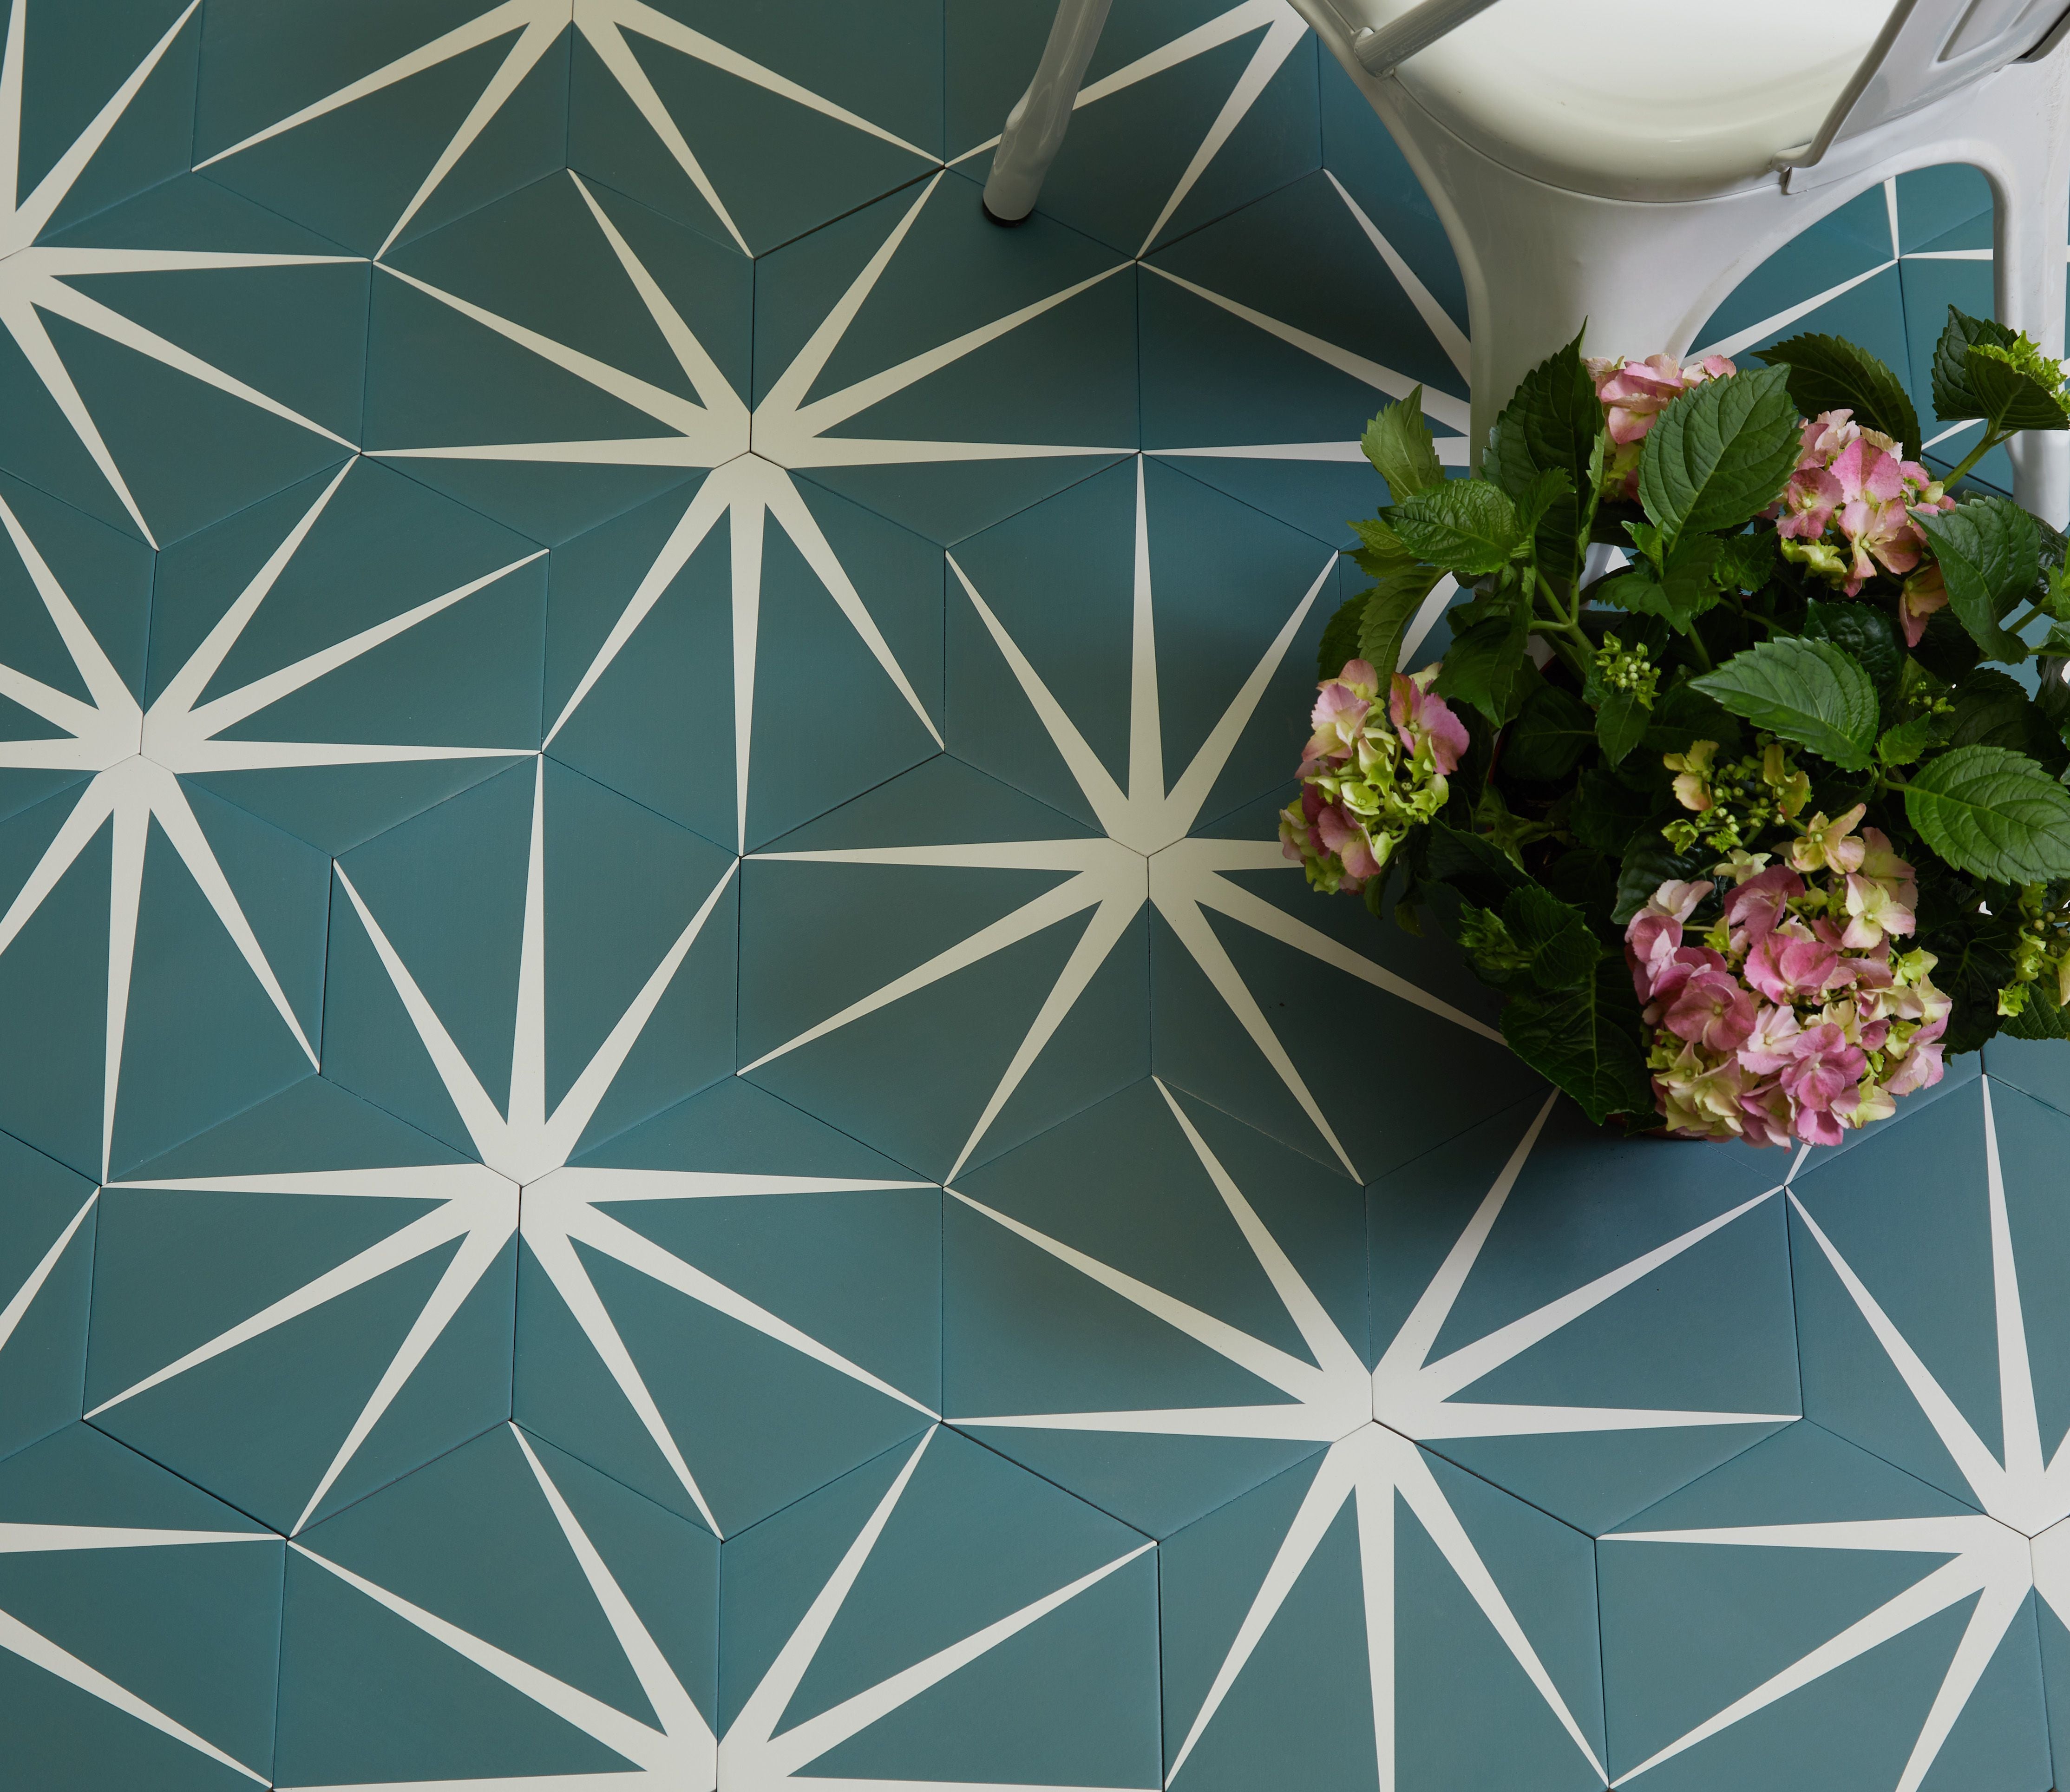 Ca' Pietra Lily Pad Tiles - Porcelain Tiles